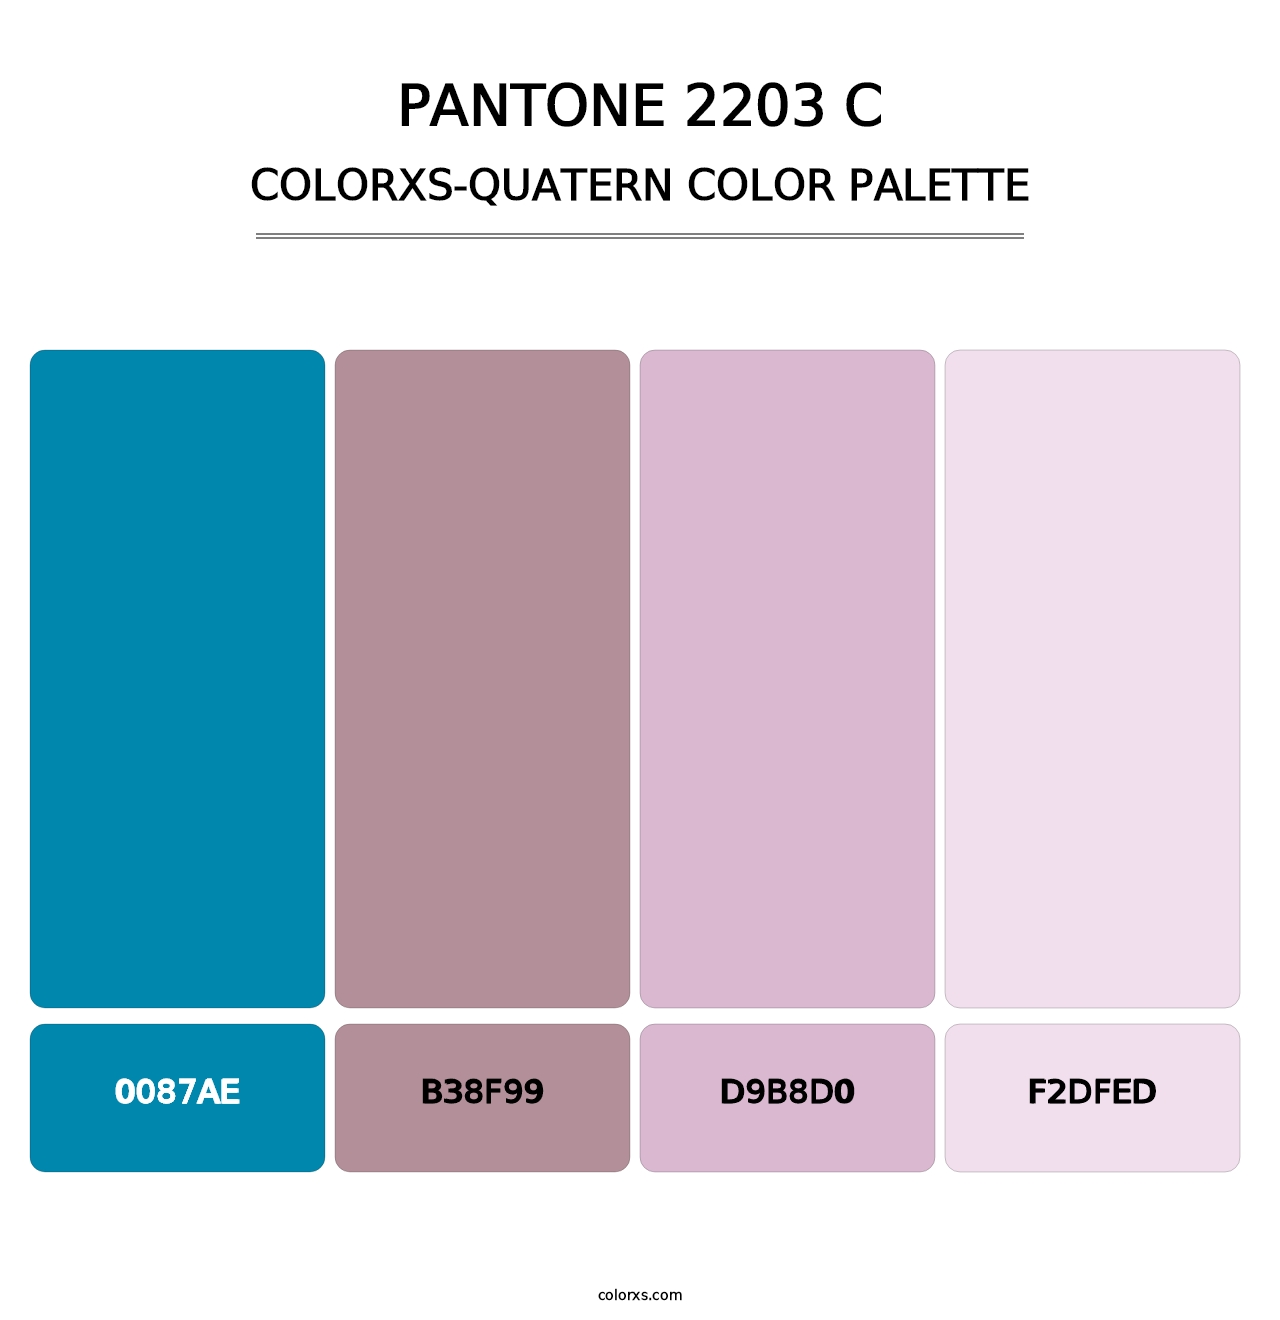 PANTONE 2203 C - Colorxs Quatern Palette